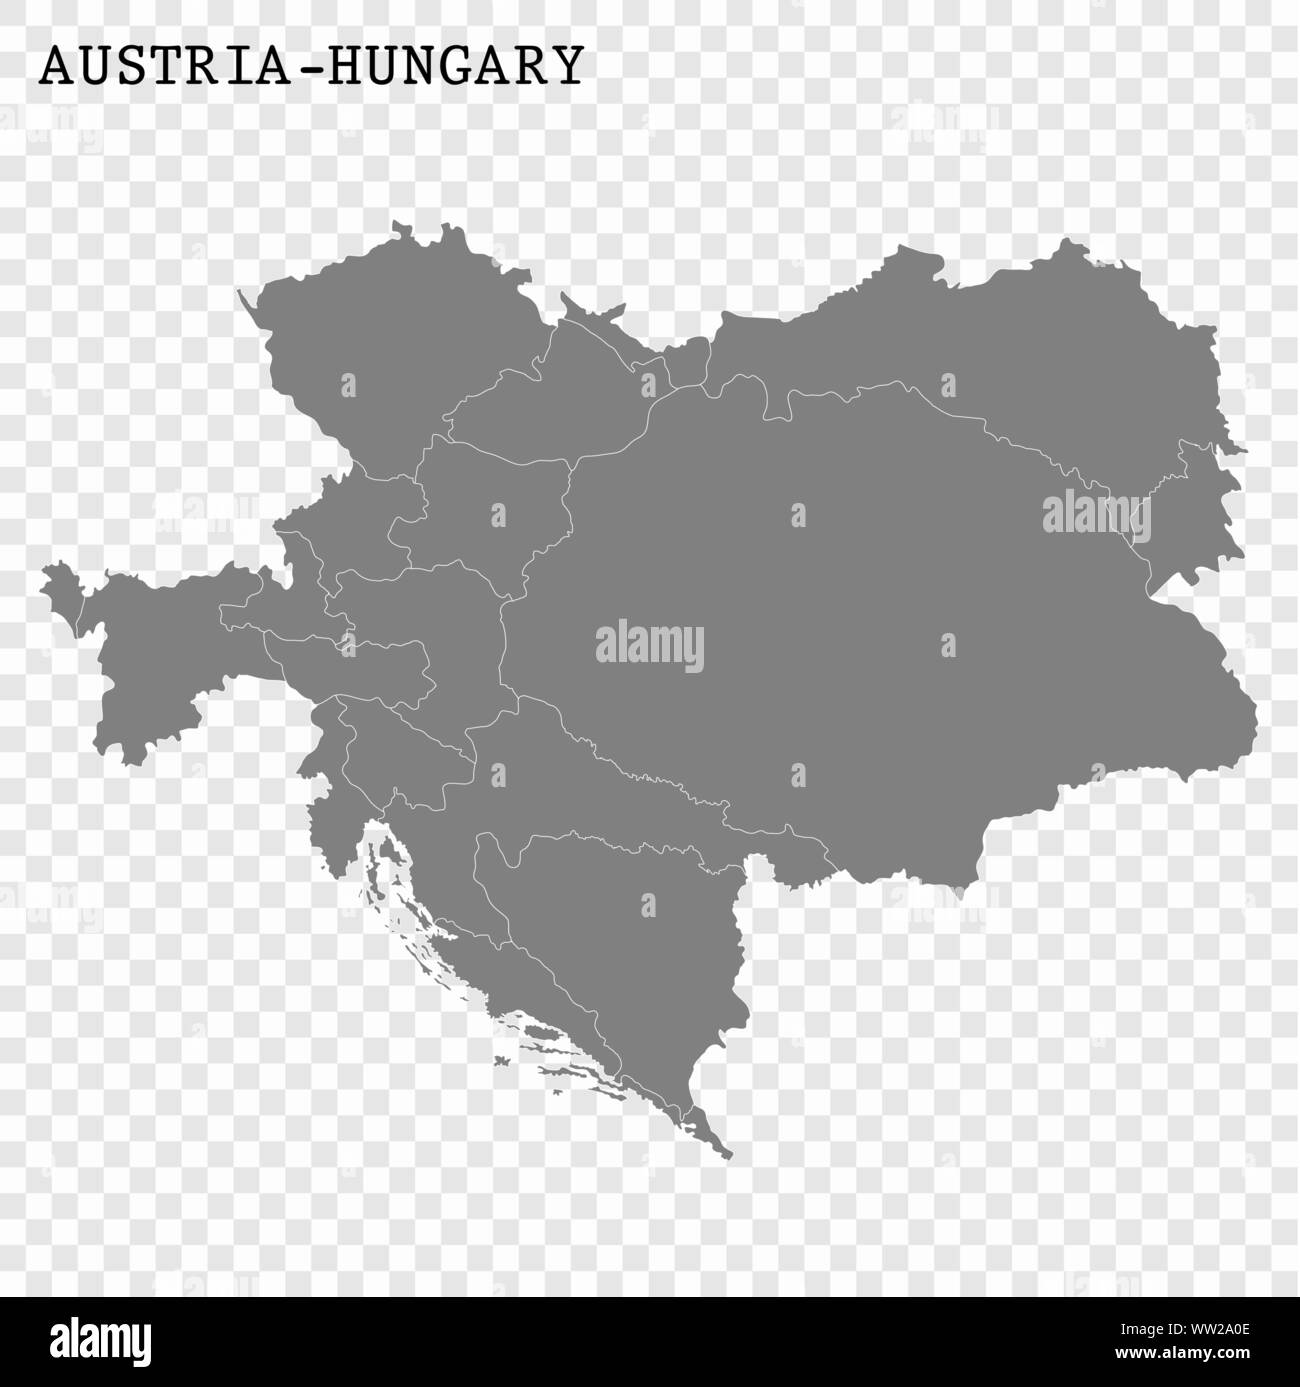 Hohe Qualität Karte von Österreich-ungarn mit Grenzen der Regionen Stock Vektor